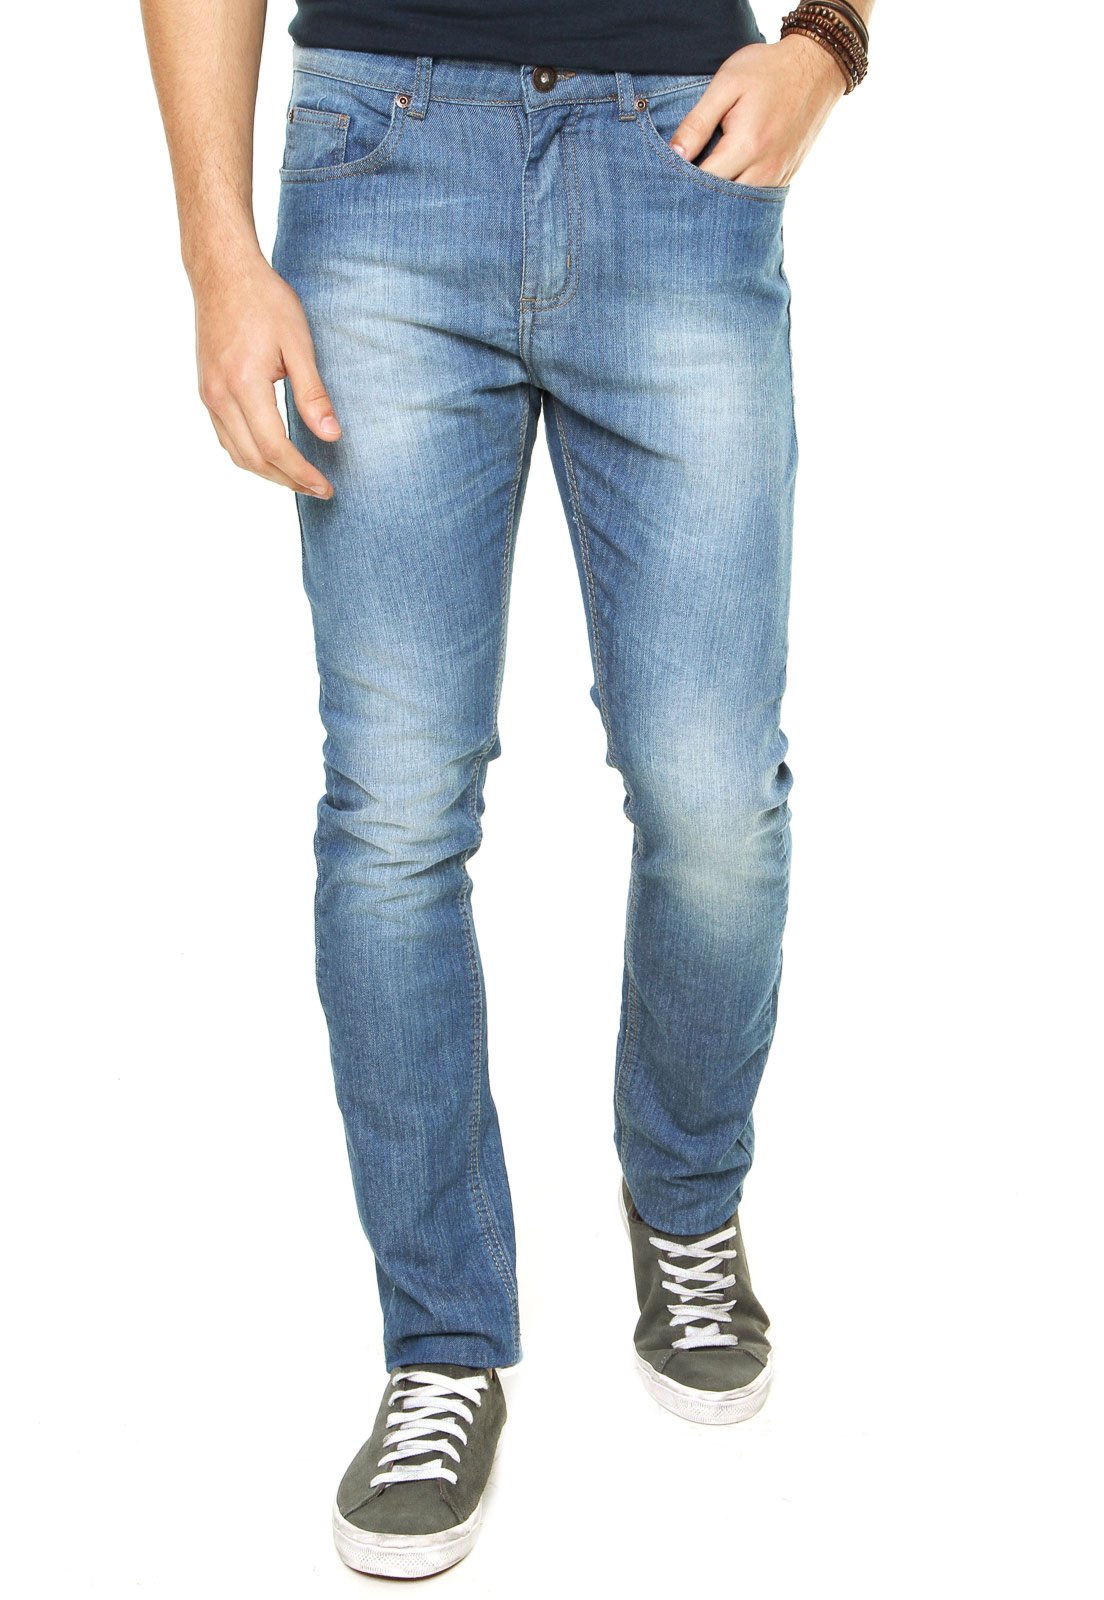 calca jeans masculina dafiti